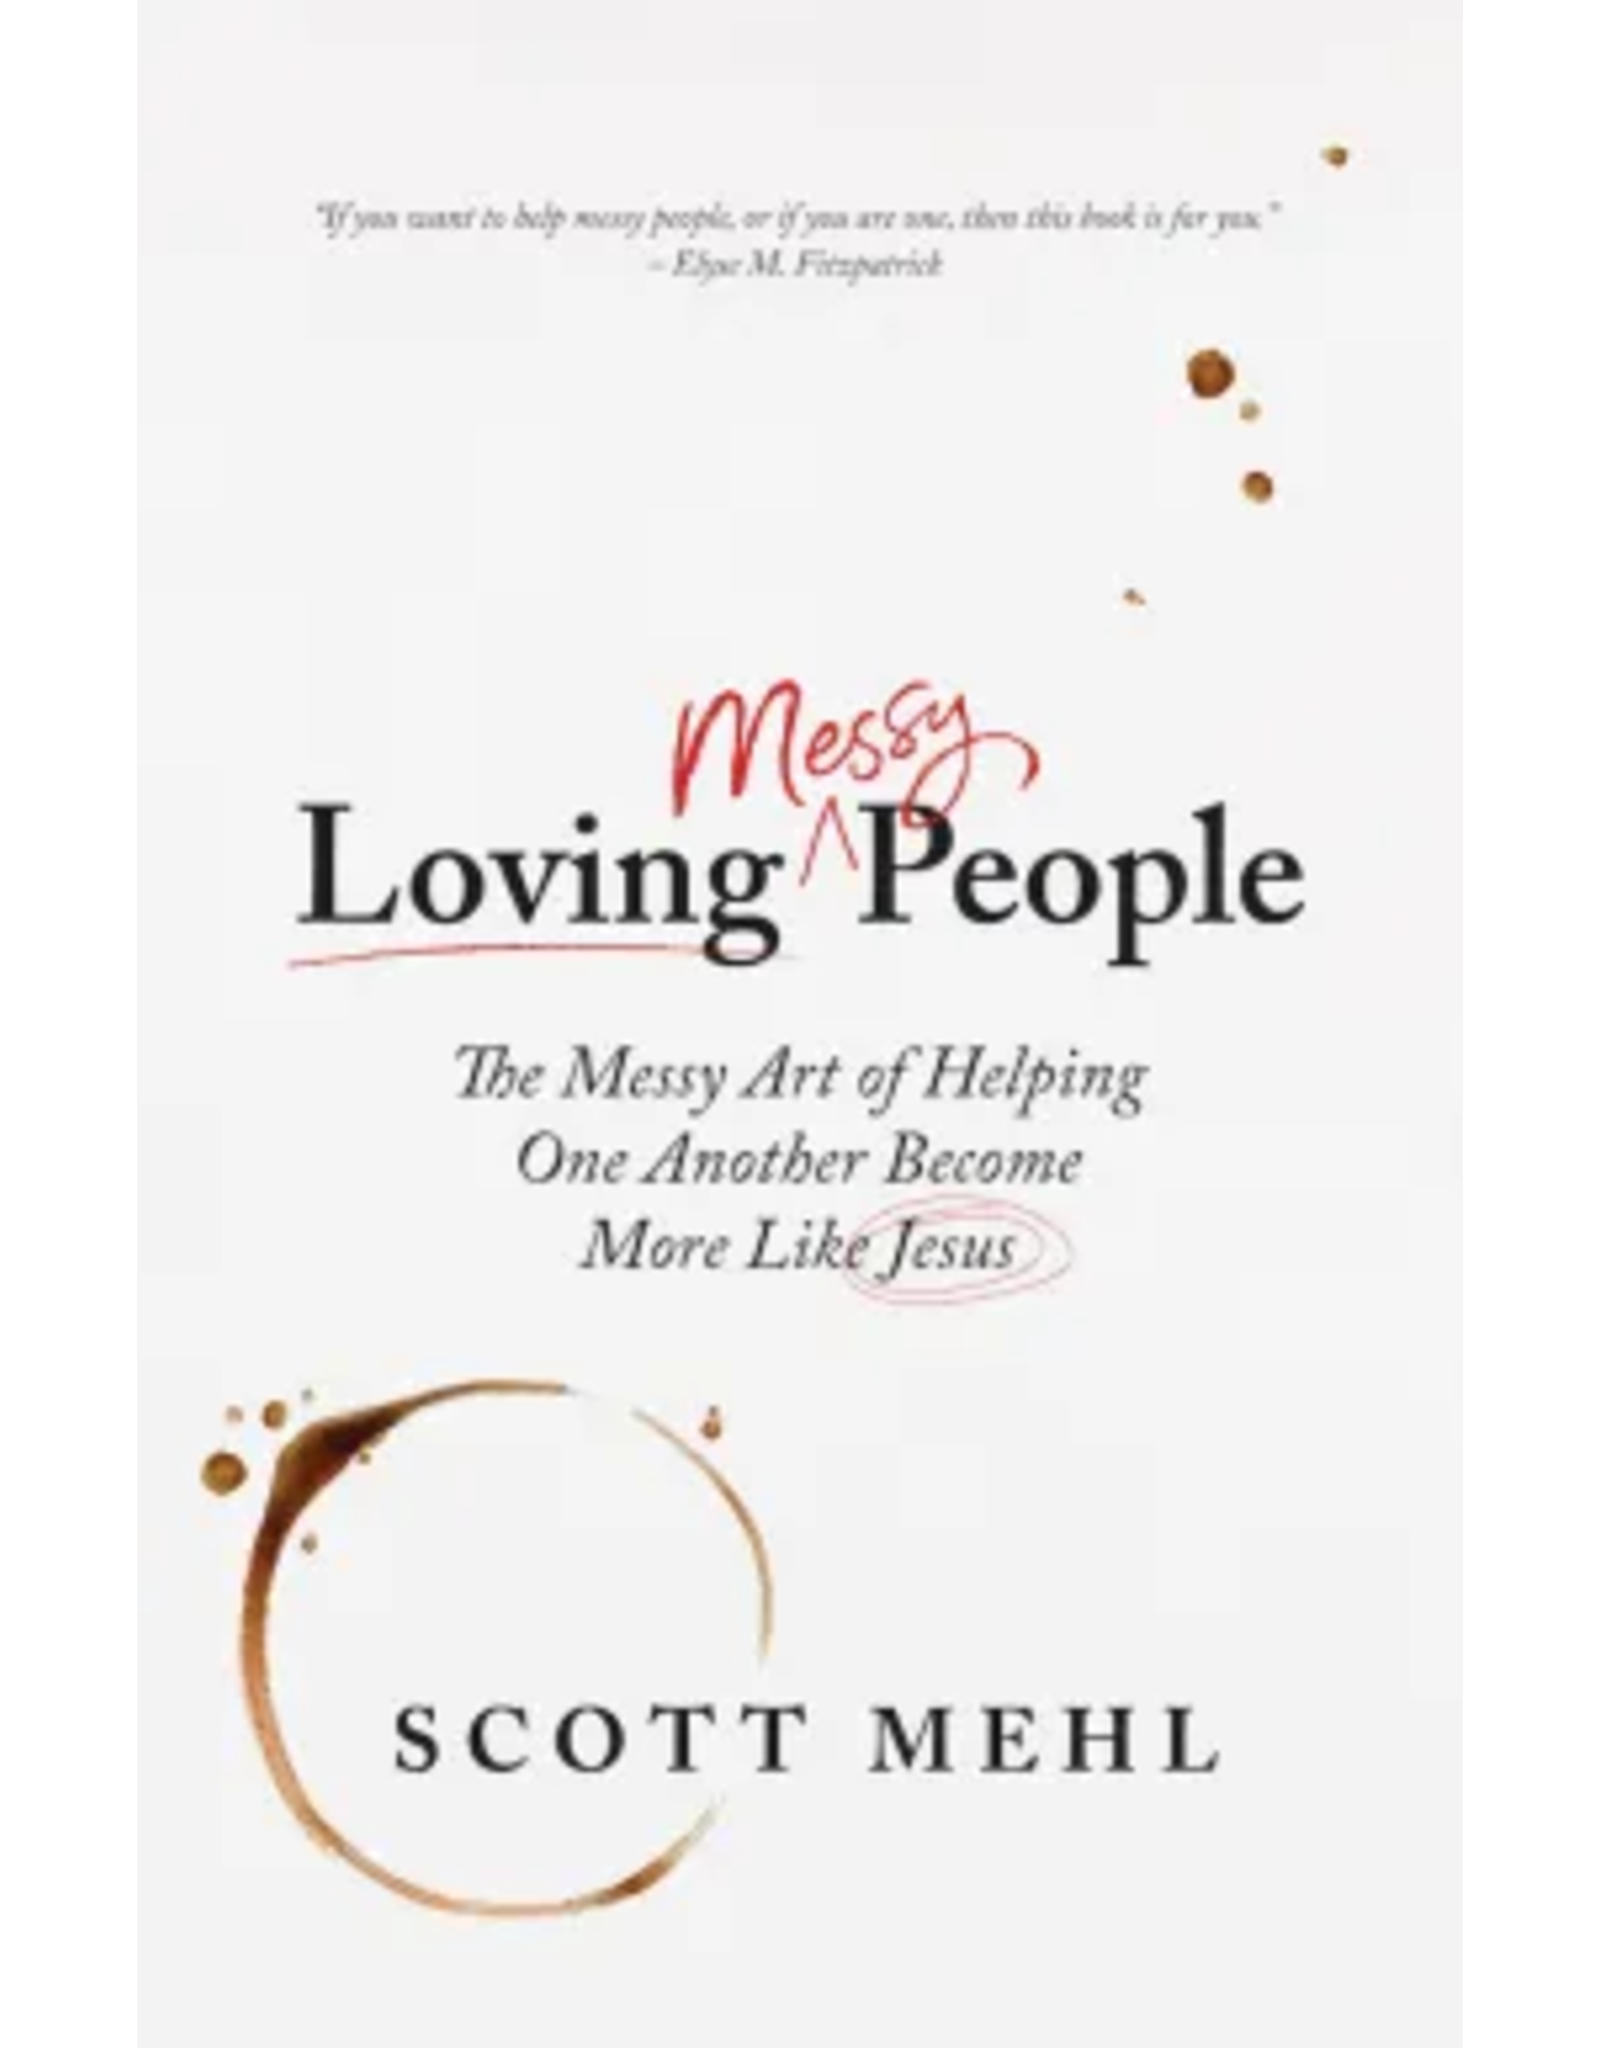 Scott Mehl Loving Messy People